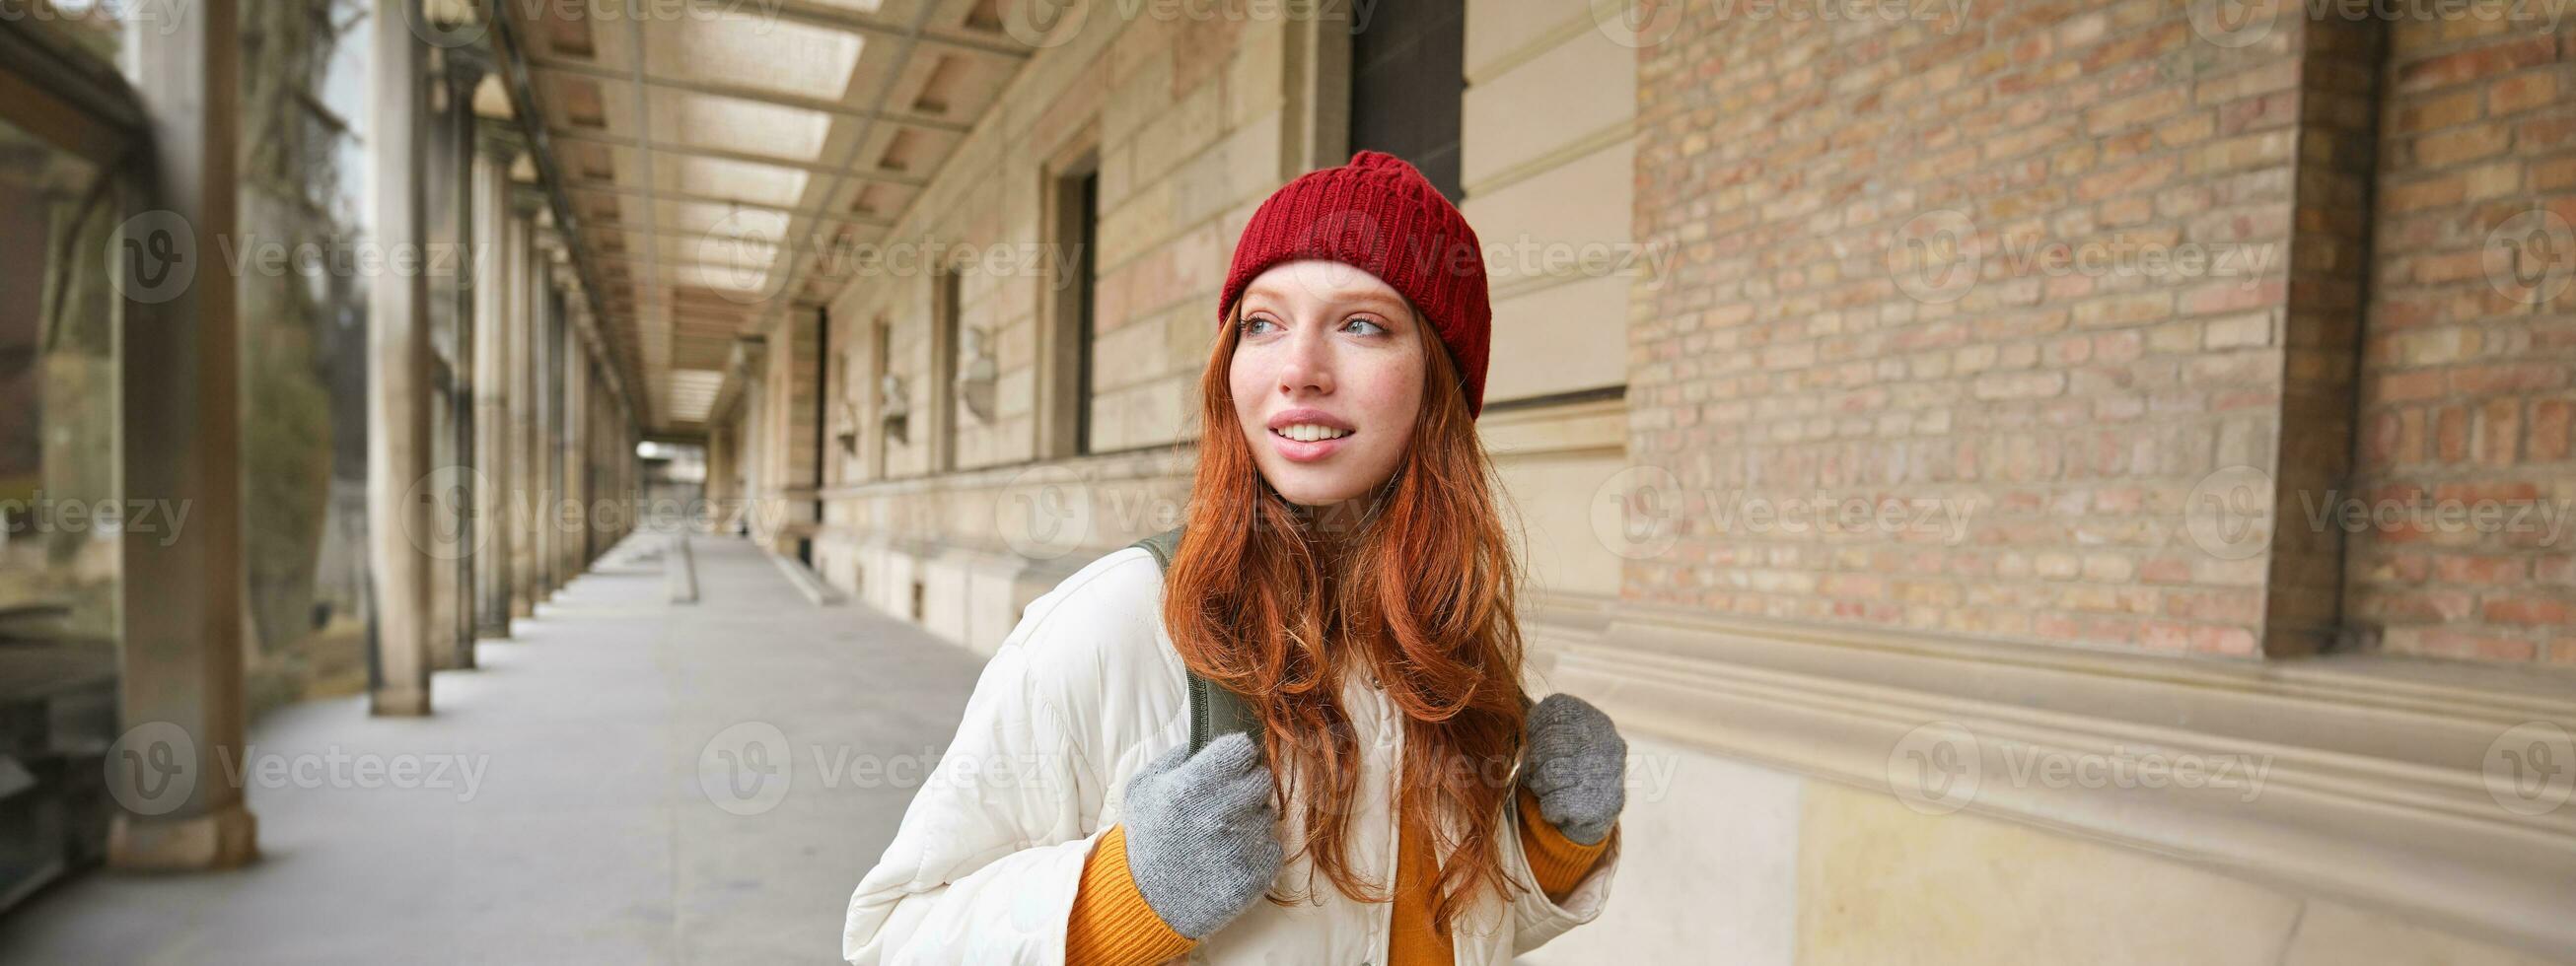 ryggsäck turist. Lycklig rödhårig flicka promenader i stad med en väska, går på resa, utforskar stad, bär röd hatt och handskar foto